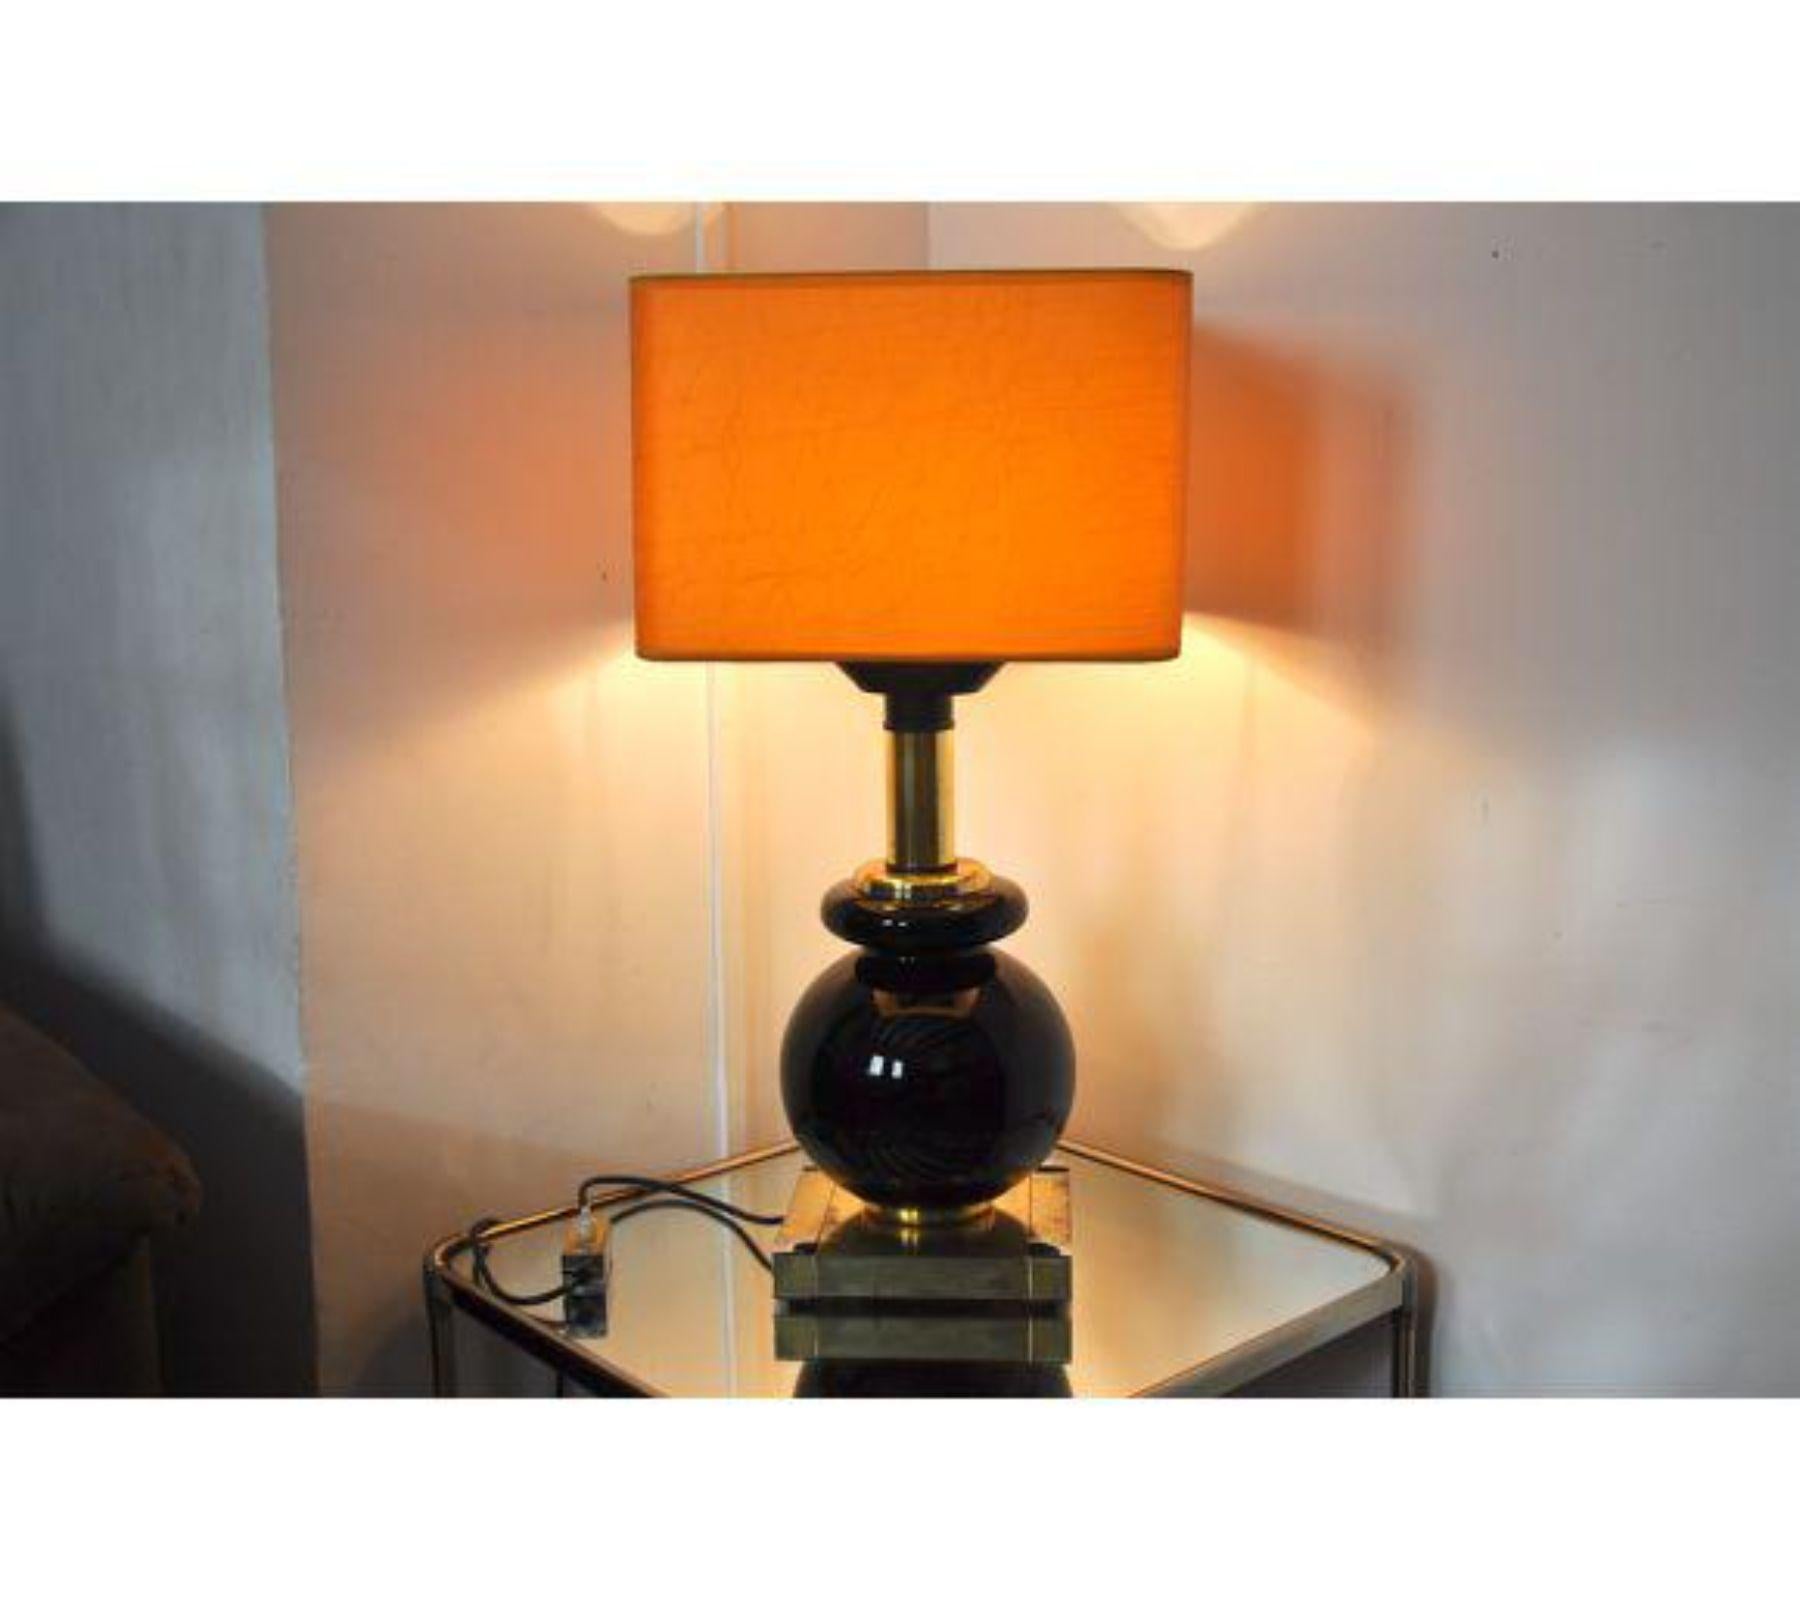 Superbe et rare lampe de table Willy Rizzo conçue en Italie pour Lumica vers 1970. La lampe est composée d'une base cubique et d'une structure en céramique noire. Cet objet est une véritable œuvre d'art et un objet de design unique qui mettra en